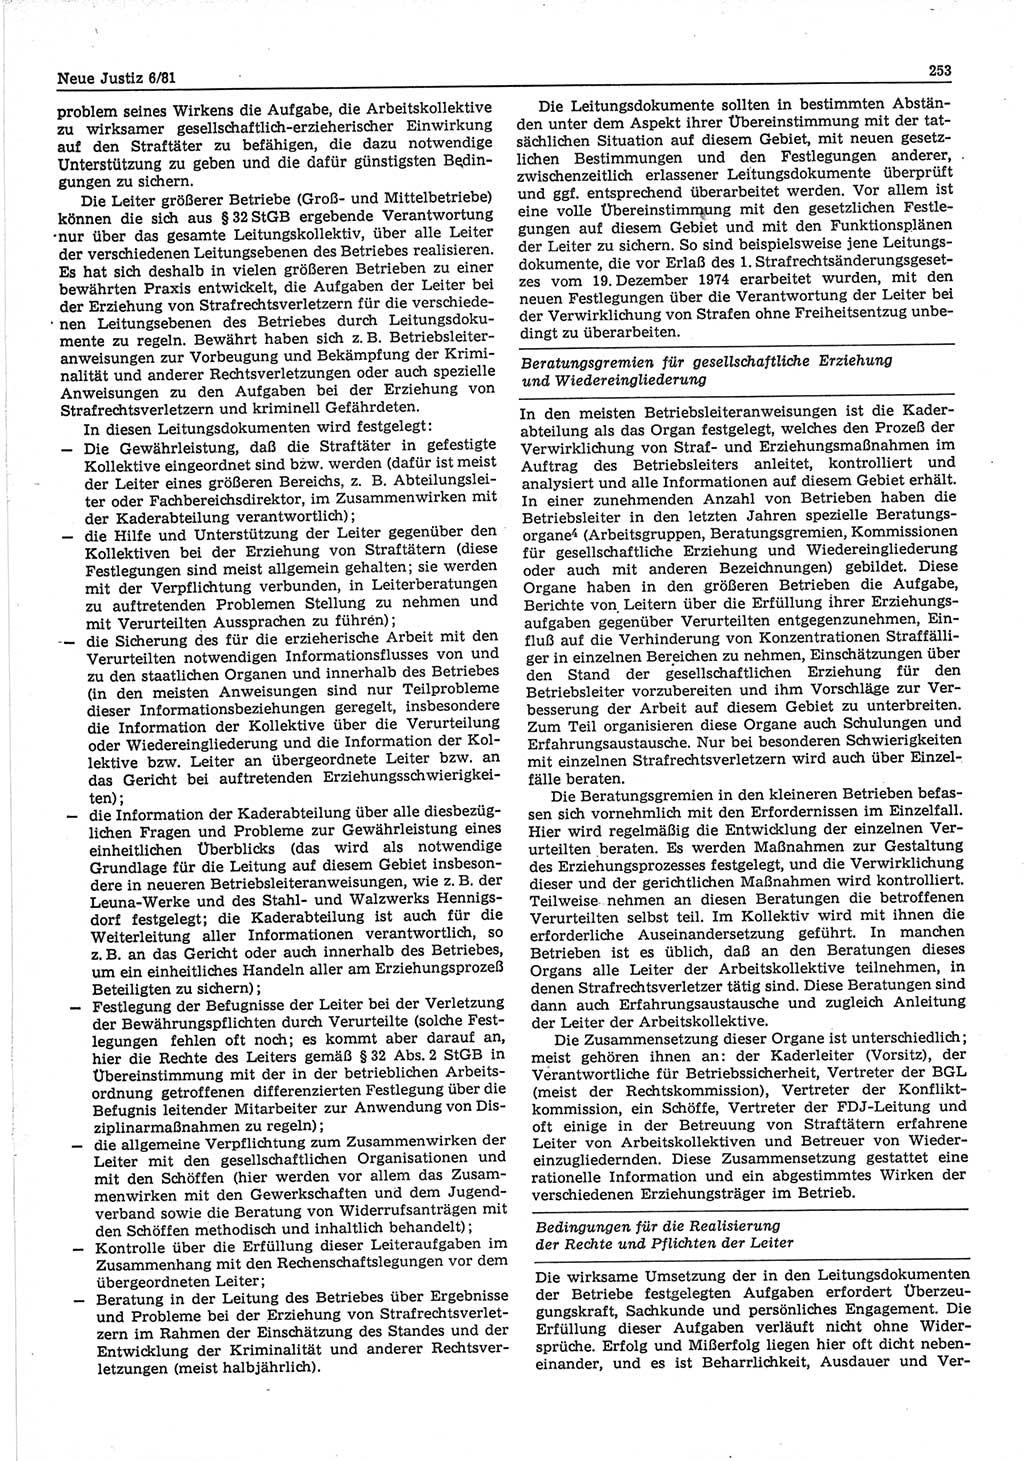 Neue Justiz (NJ), Zeitschrift für sozialistisches Recht und Gesetzlichkeit [Deutsche Demokratische Republik (DDR)], 35. Jahrgang 1981, Seite 253 (NJ DDR 1981, S. 253)